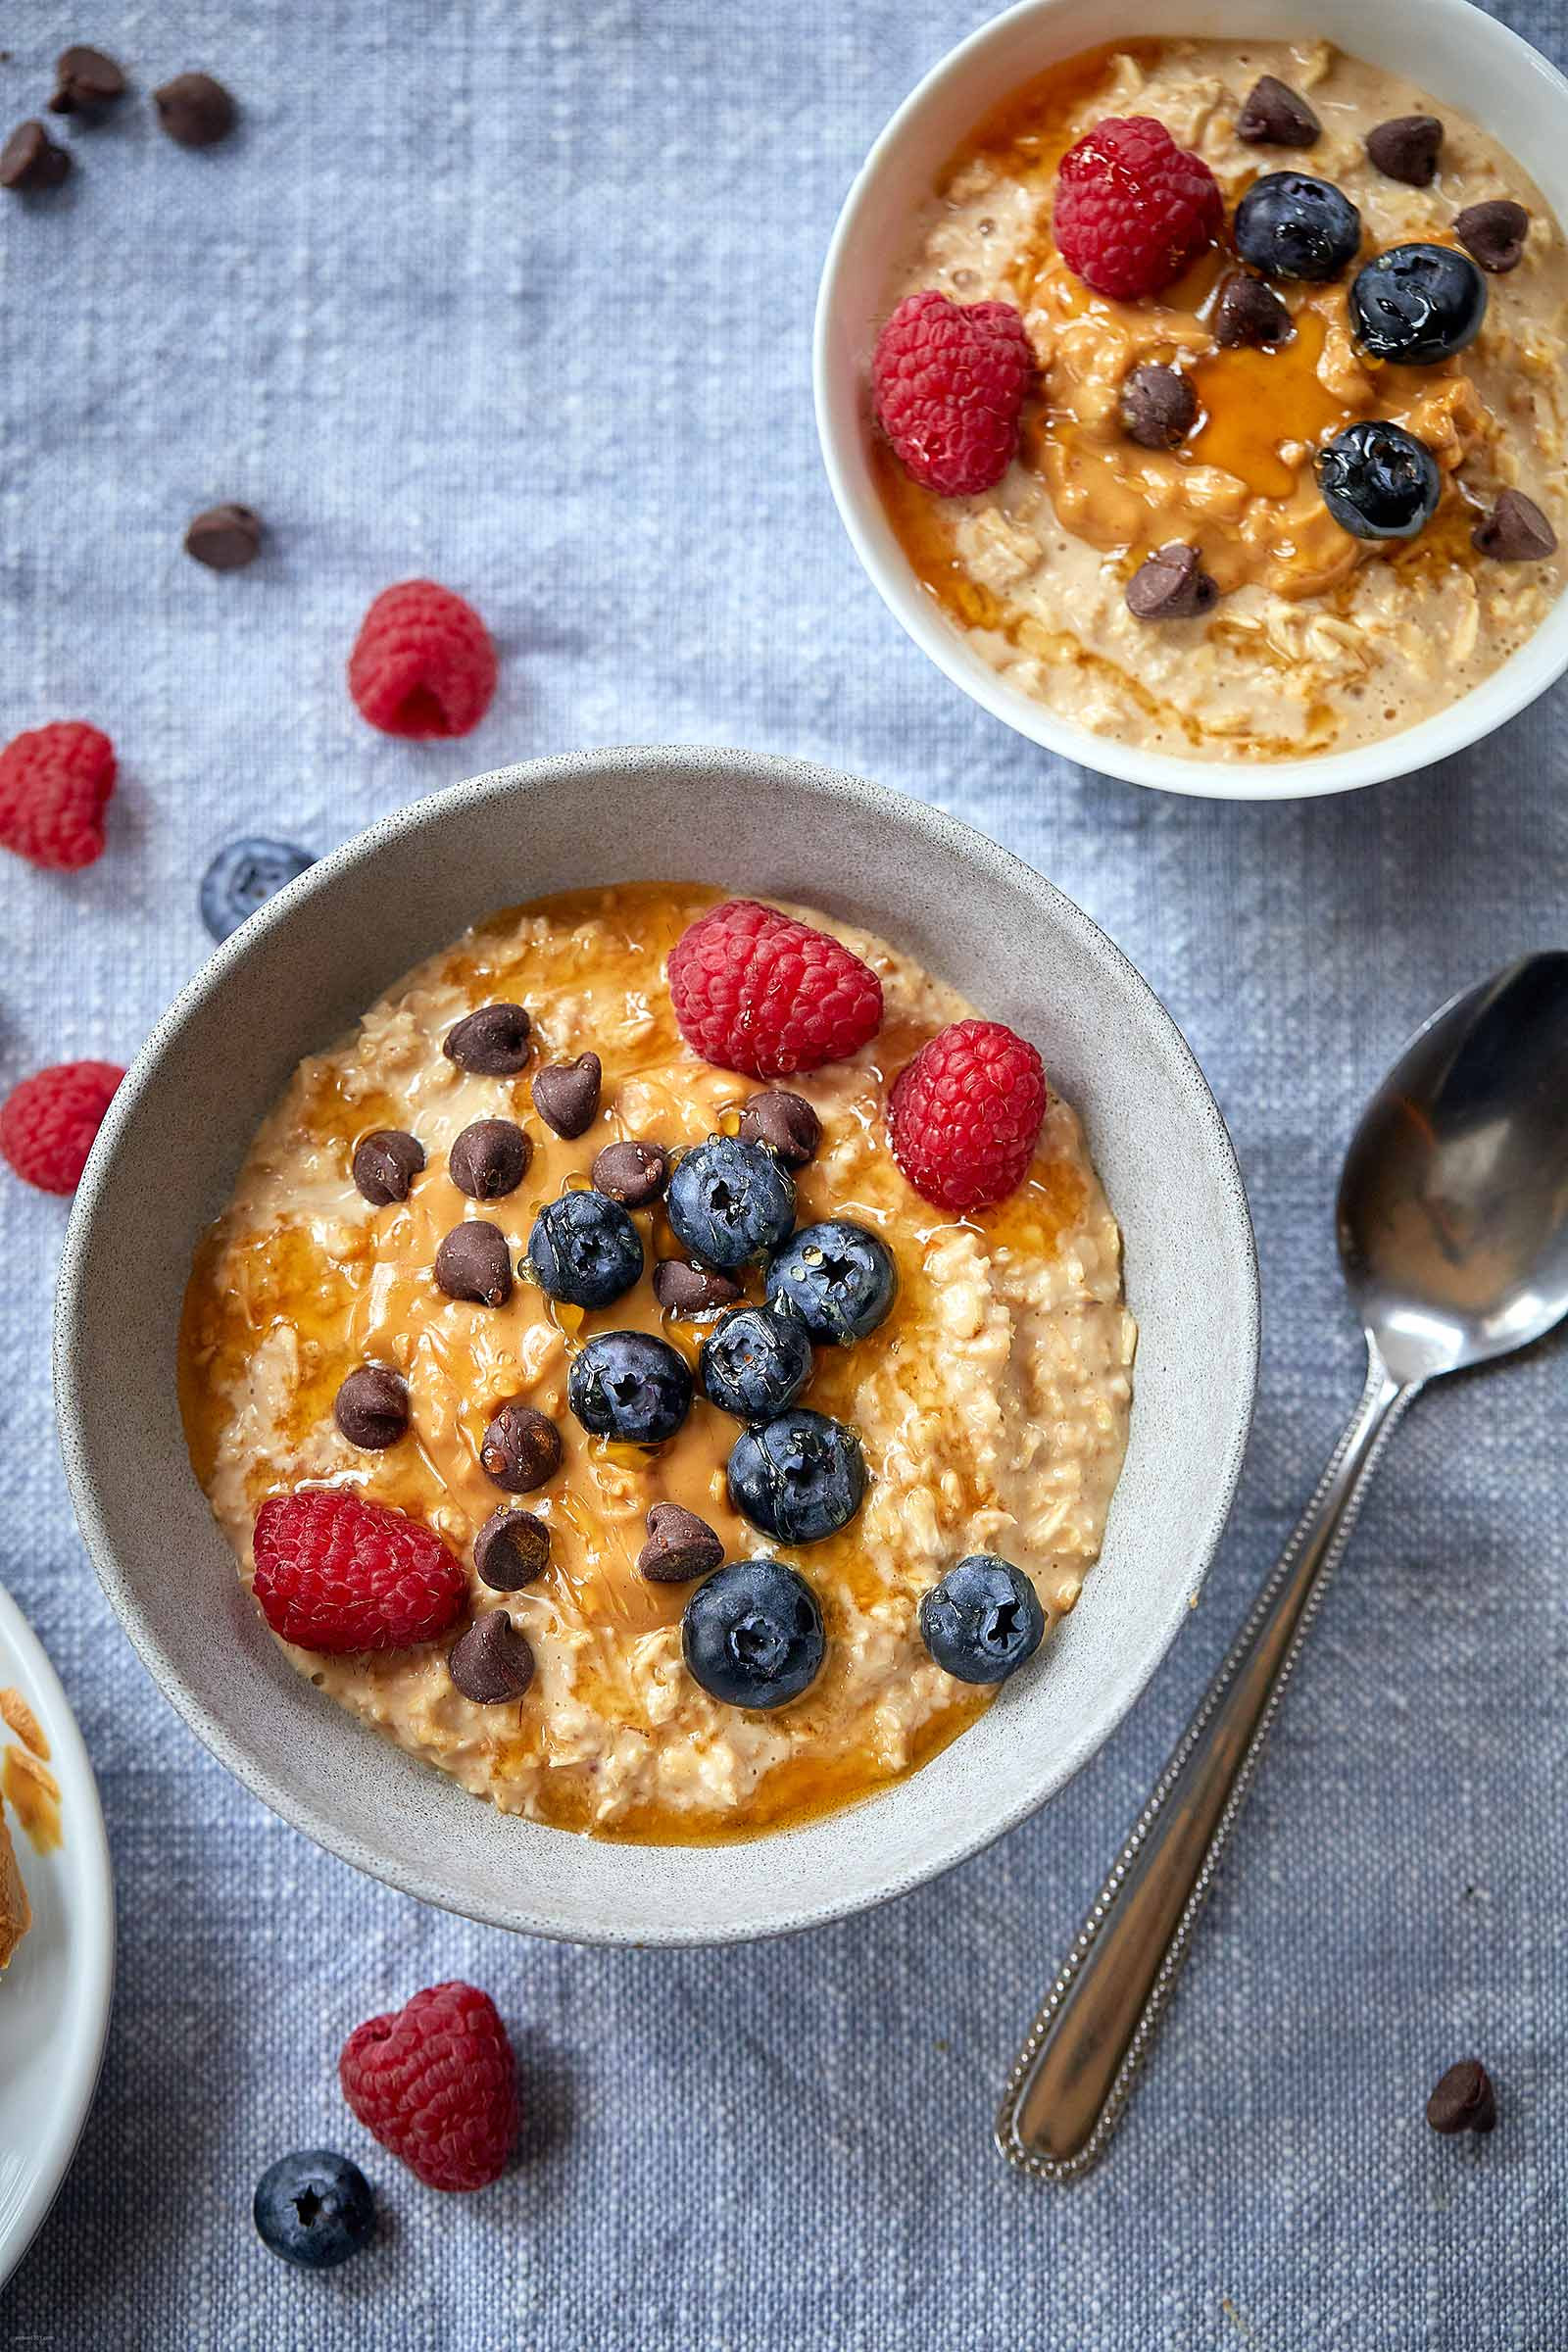 15 Best Ideas Oatmeal Recipes for Breakfast